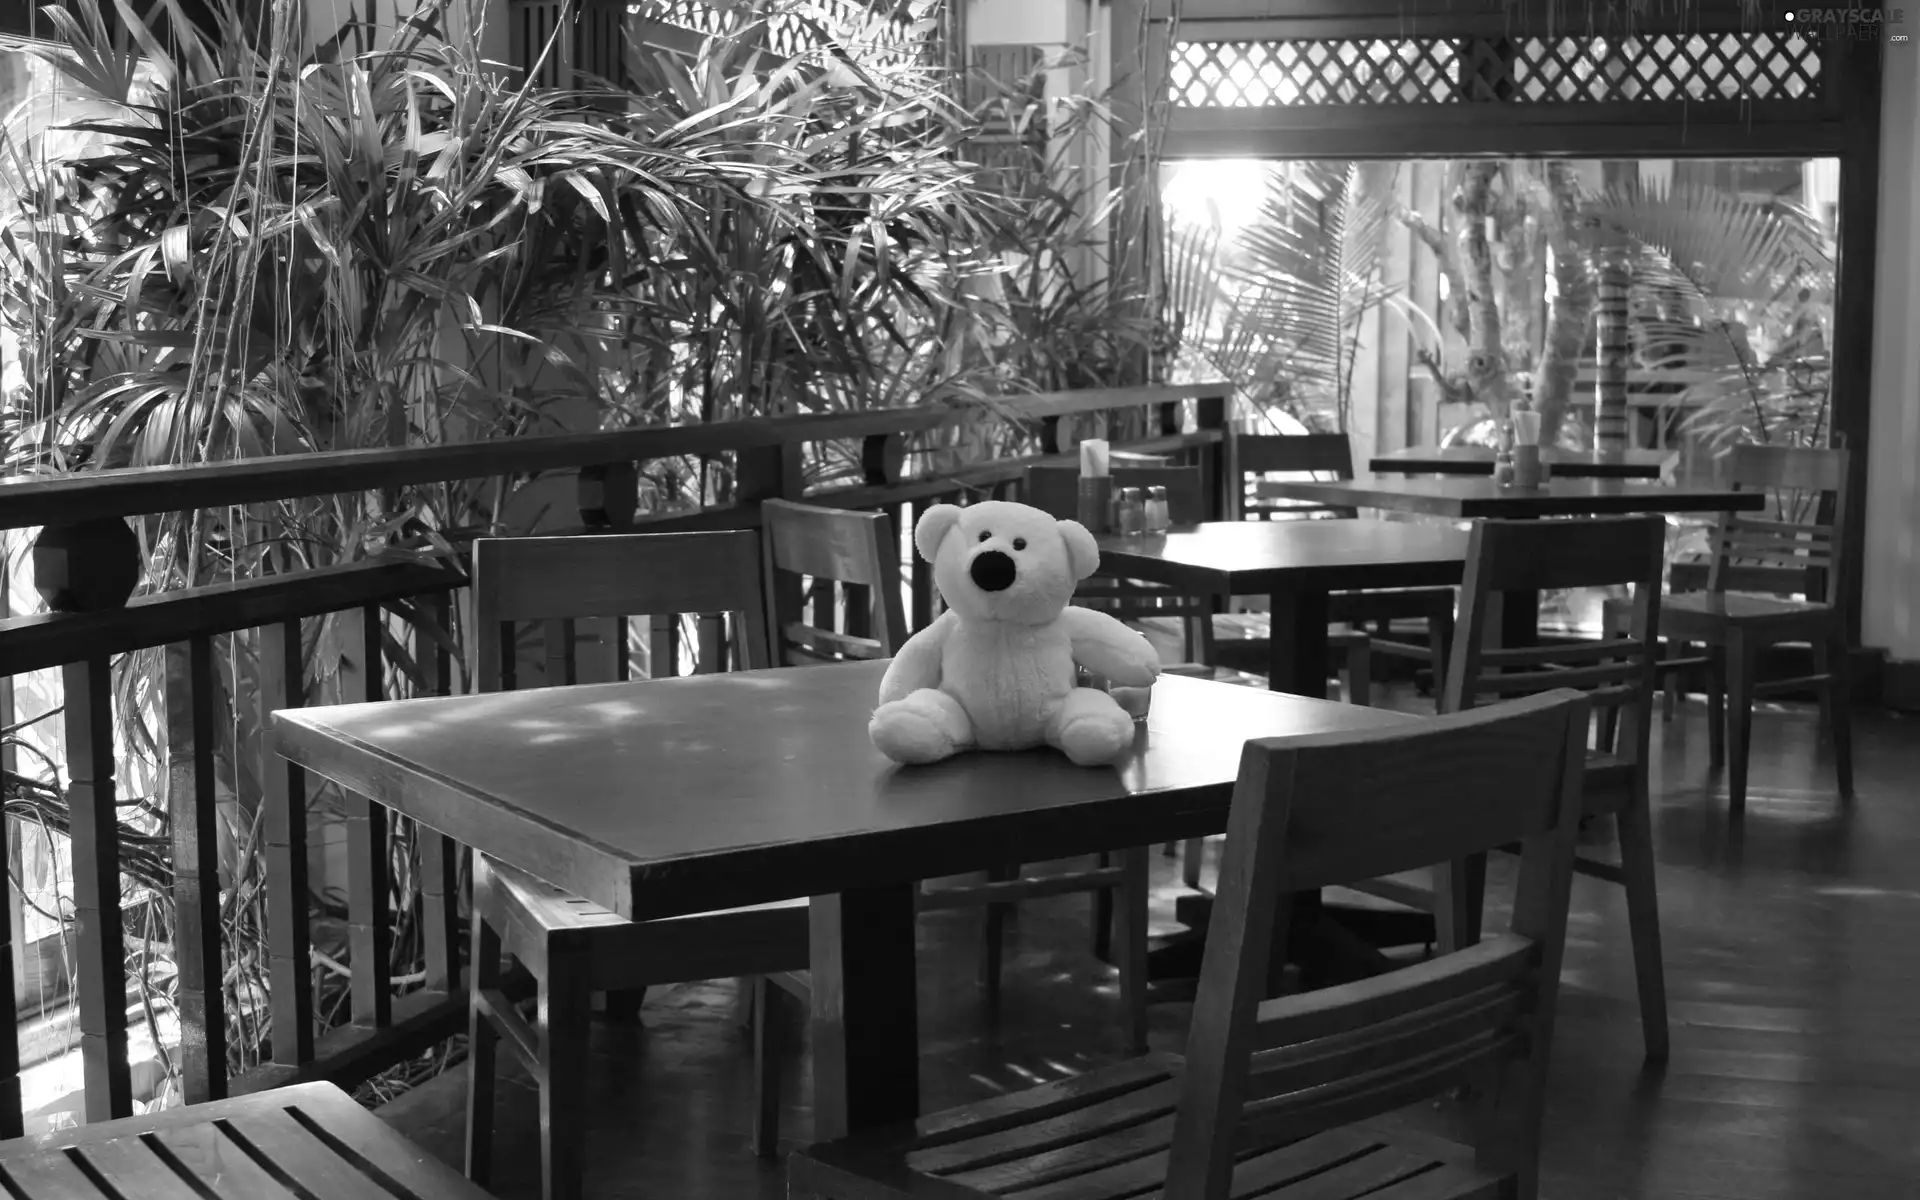 Stool, teddy bear, Table